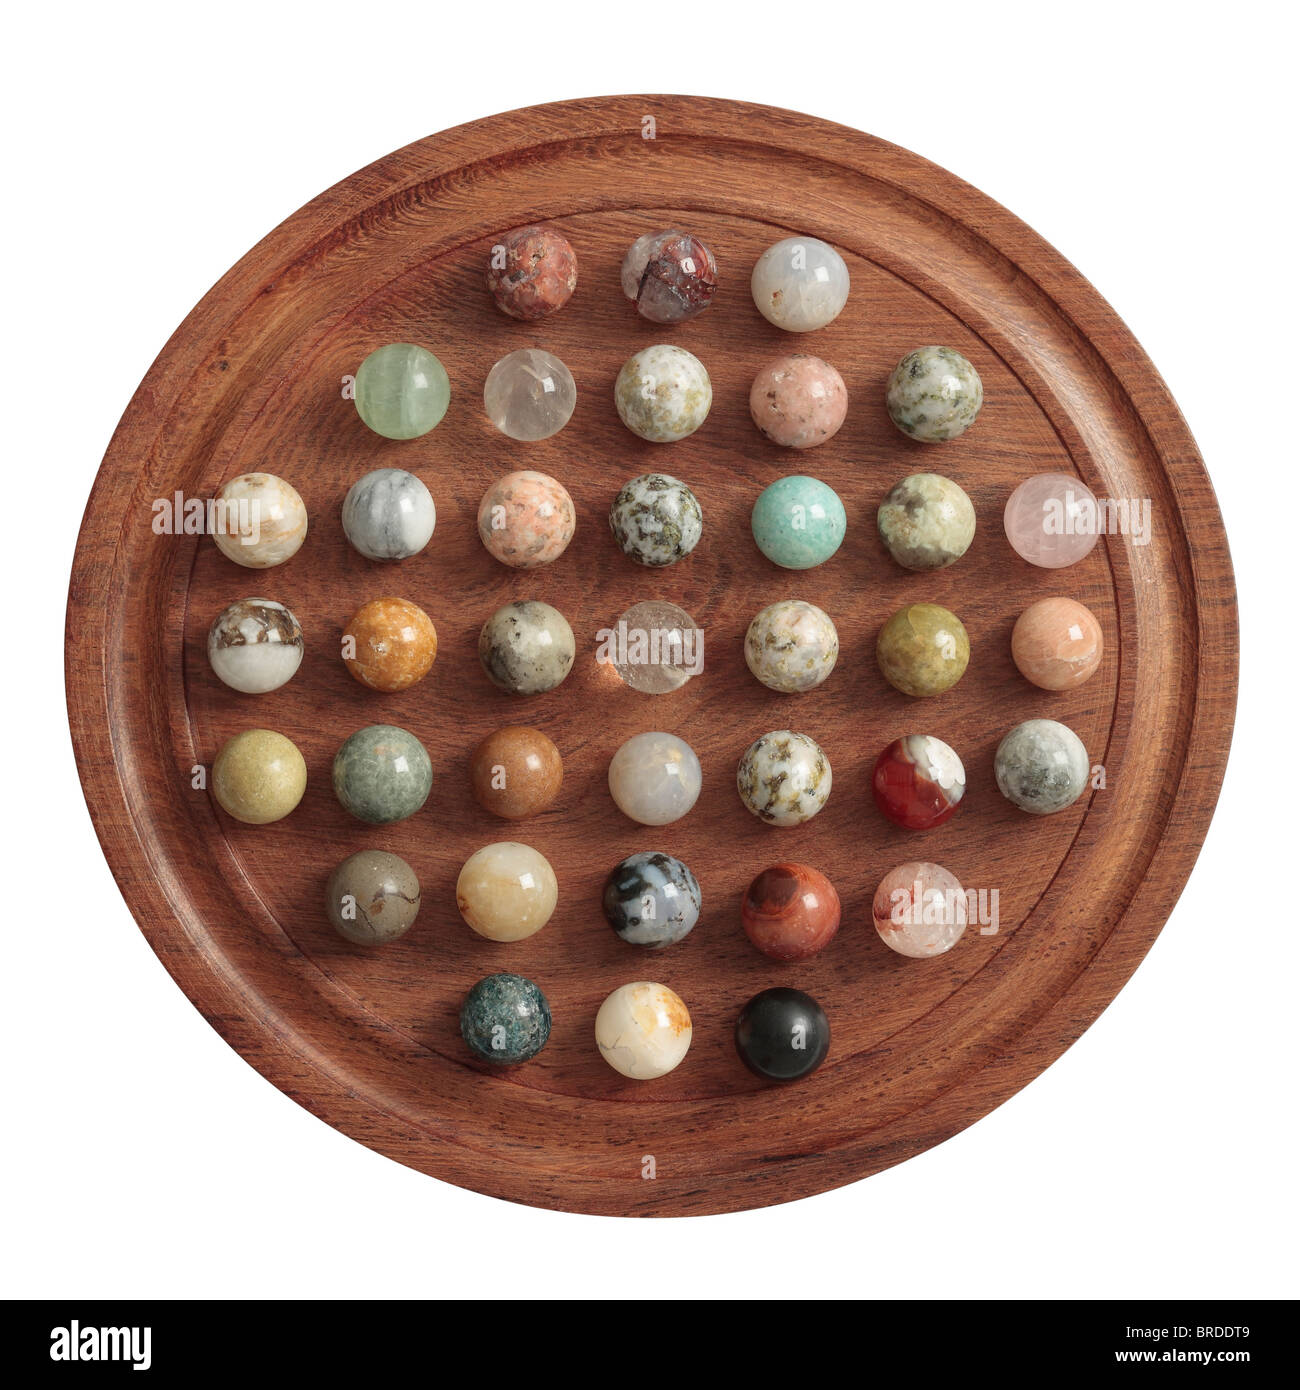 Solitaire Board with Semi-Precious Stone Balls. Stock Photo